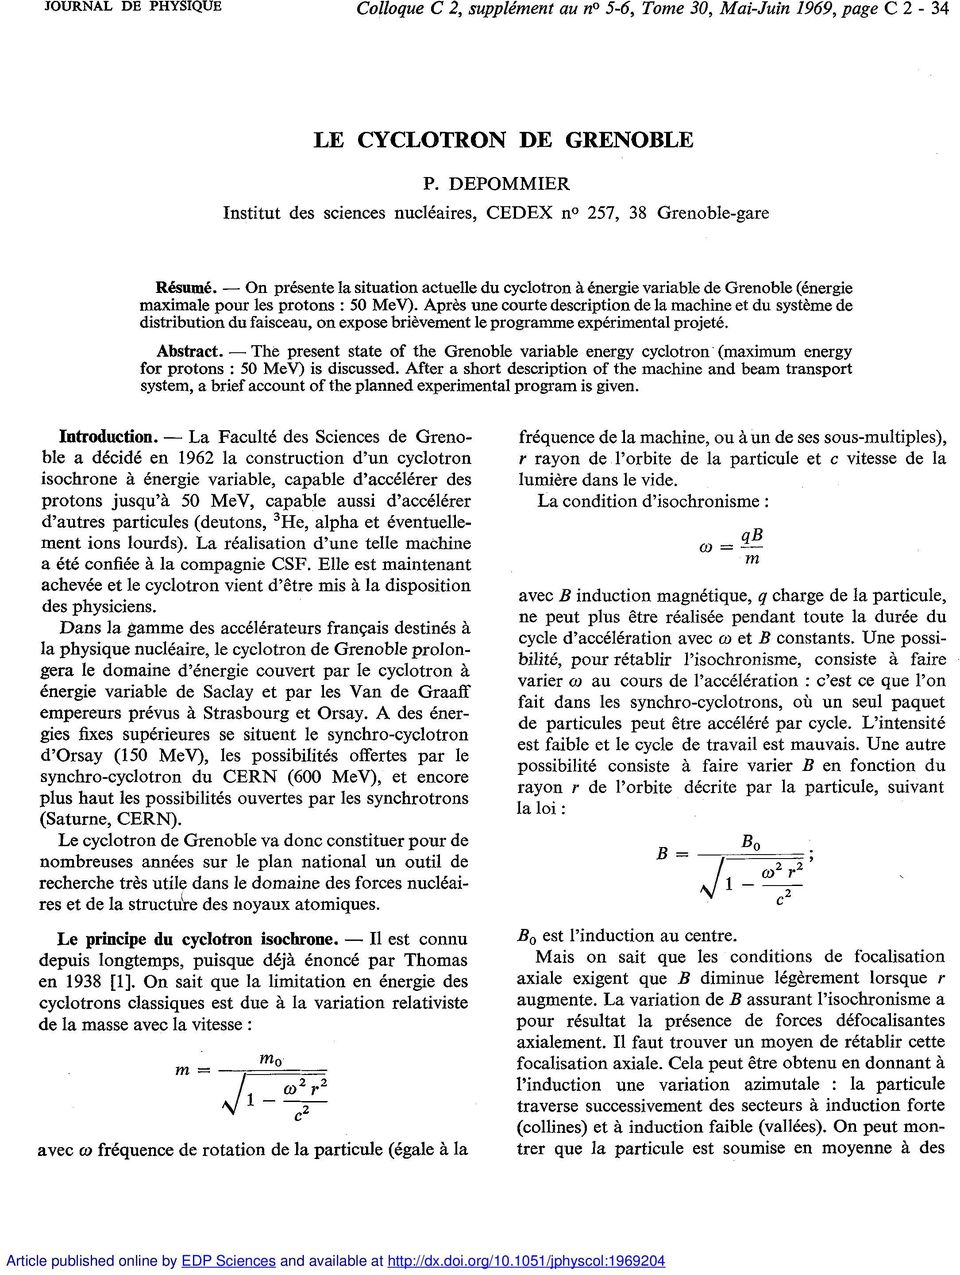 - On présente la situation actuelle du cyclotron à énergie variable de Grenoble (énergie maximale pour les protons : 50 MeV).